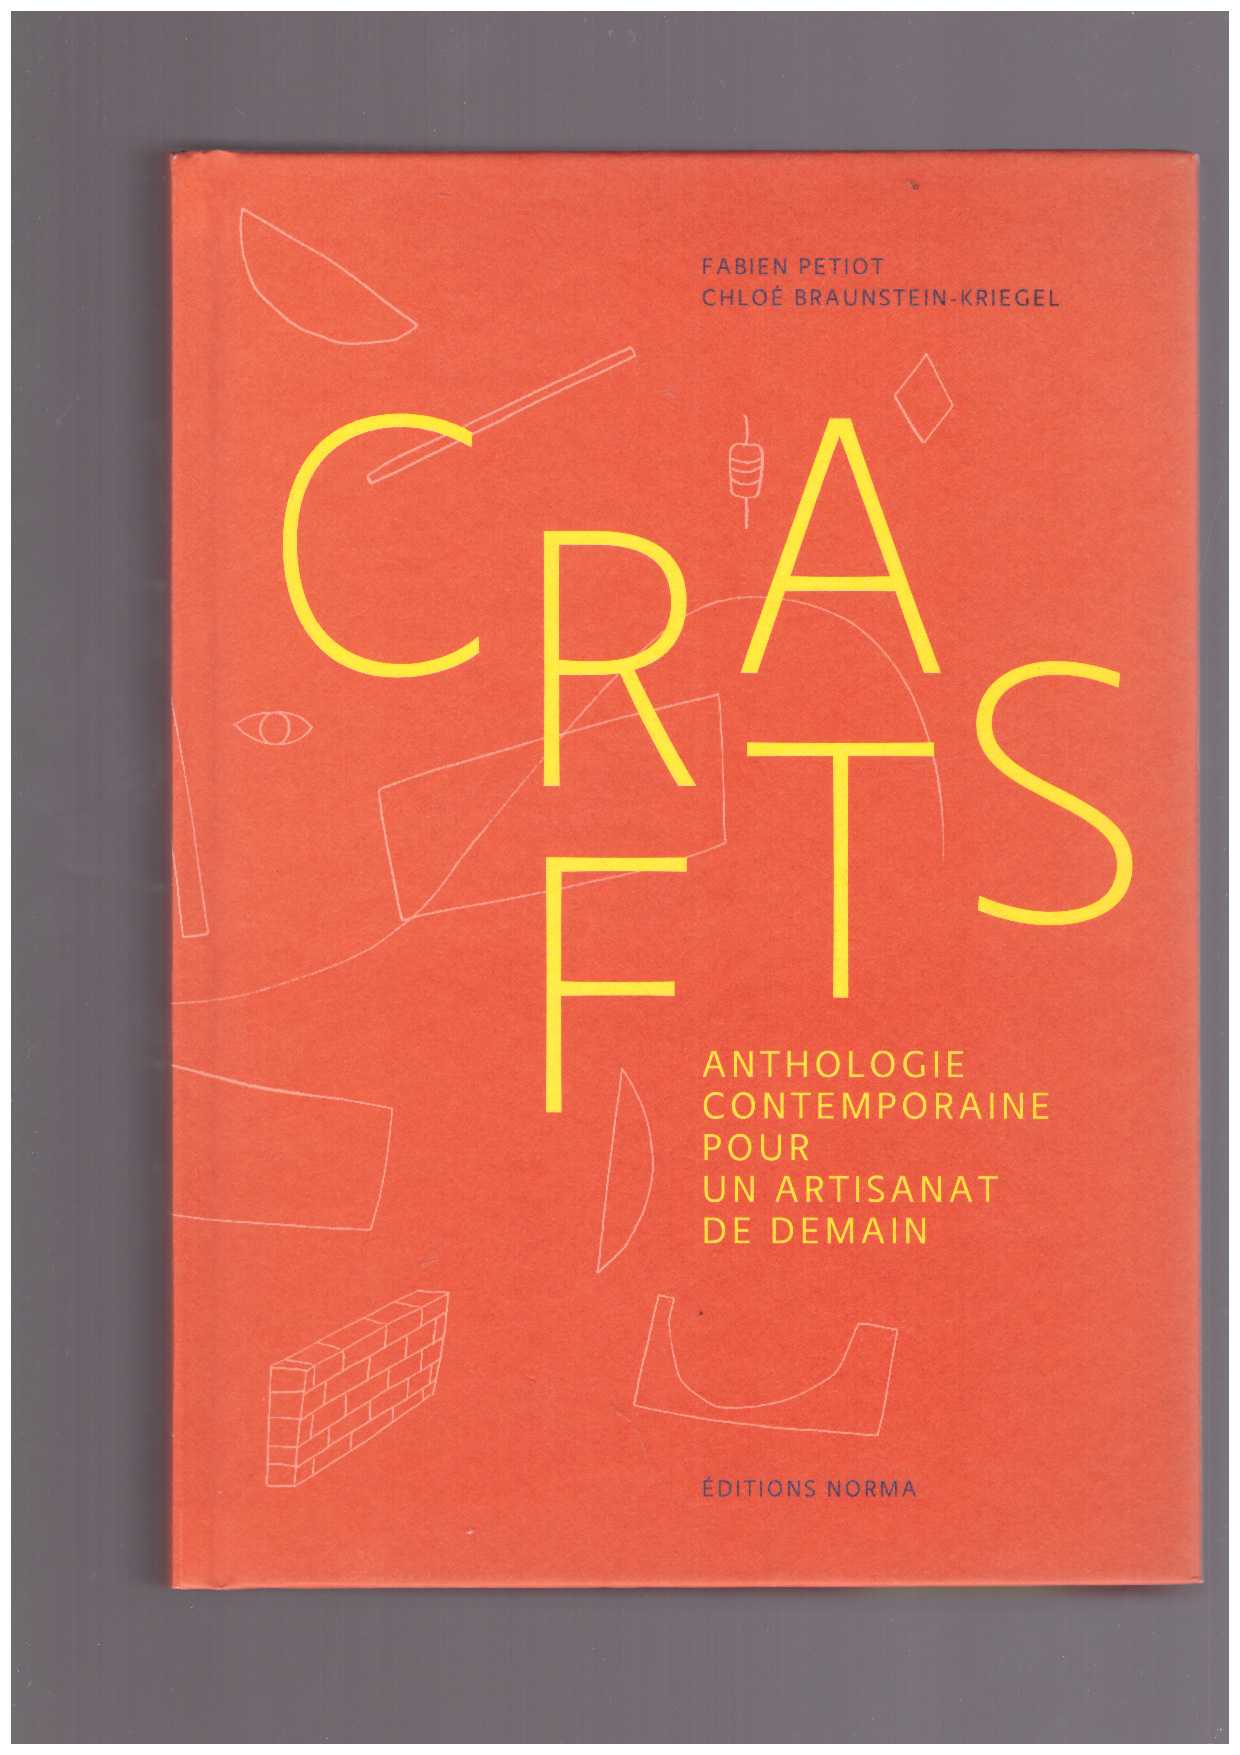  BRAUNSTEIN-KRIEGEL, Chloé; PETIOT, Fabien (eds.) - Crafts. Anthologie contemporaine pour un artisanat de demain